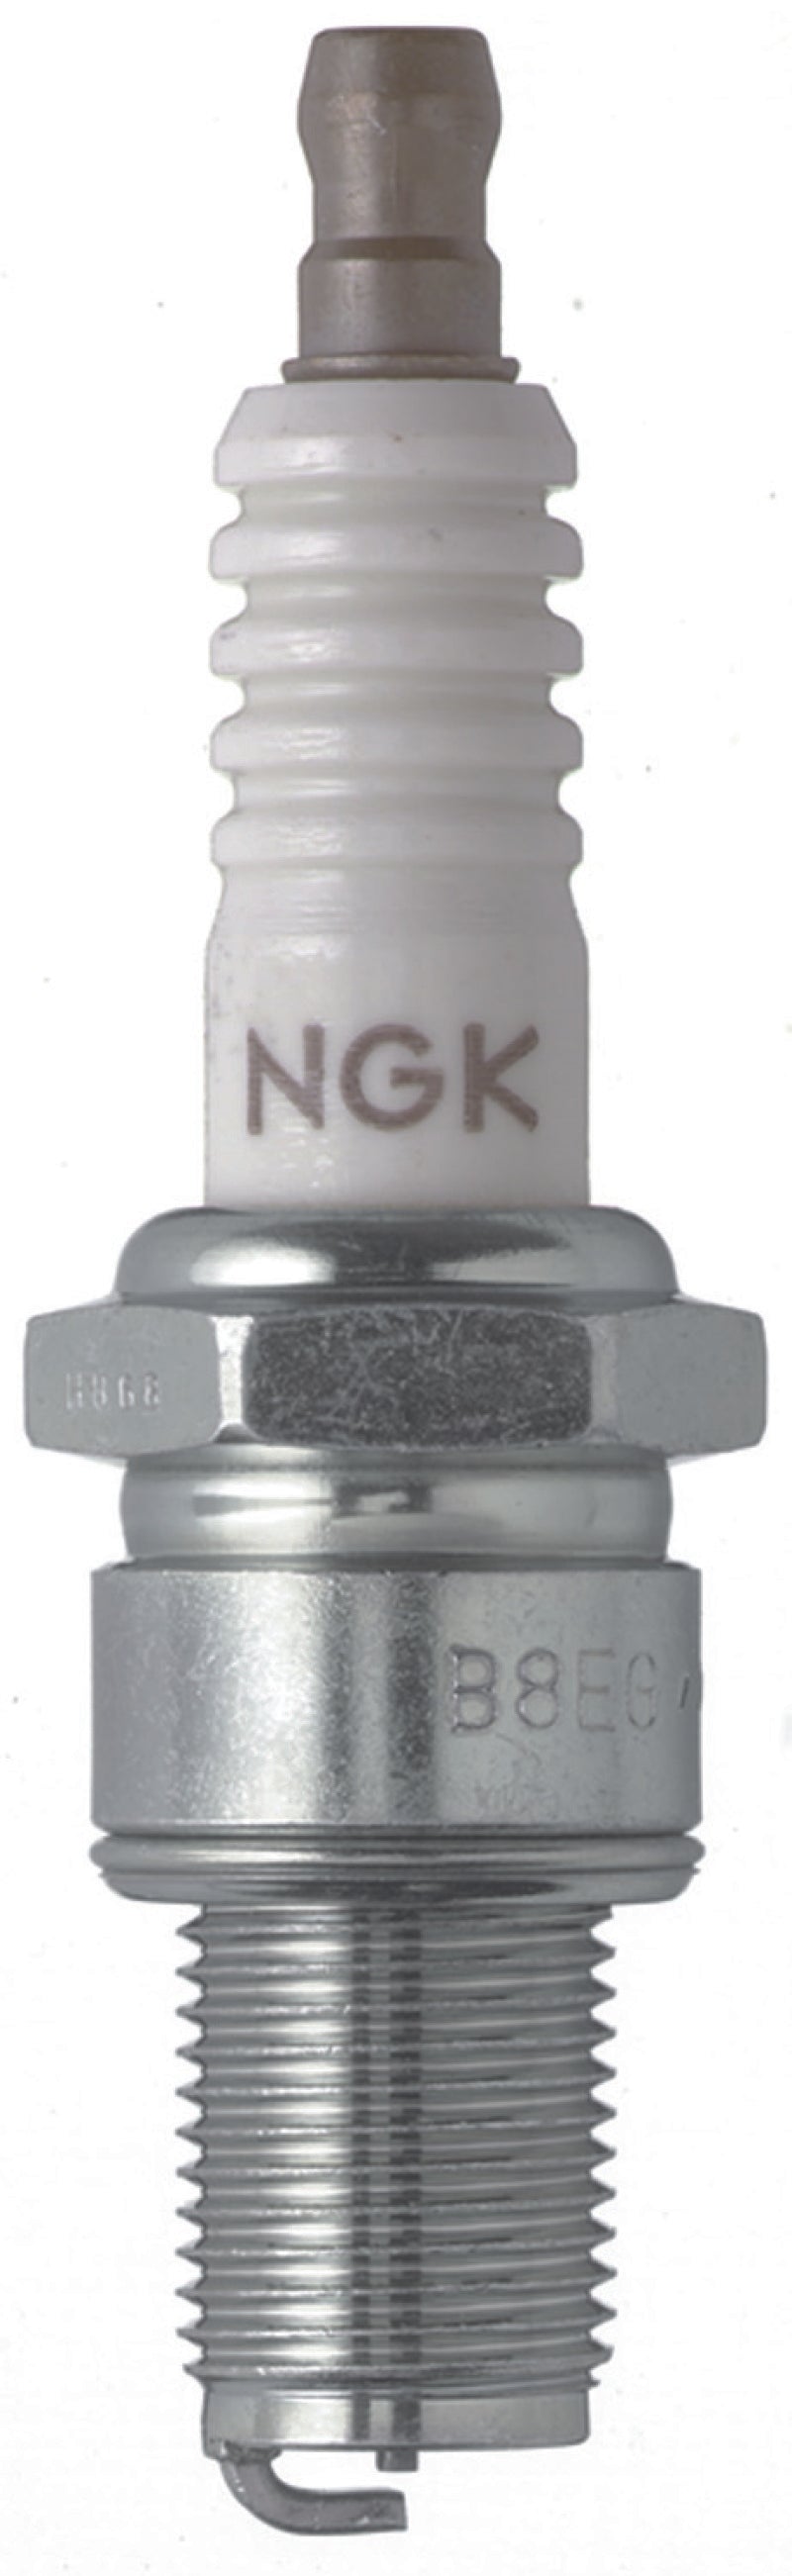 NGK Racing Spark Plug Box of 4 (B8EG SOLID)